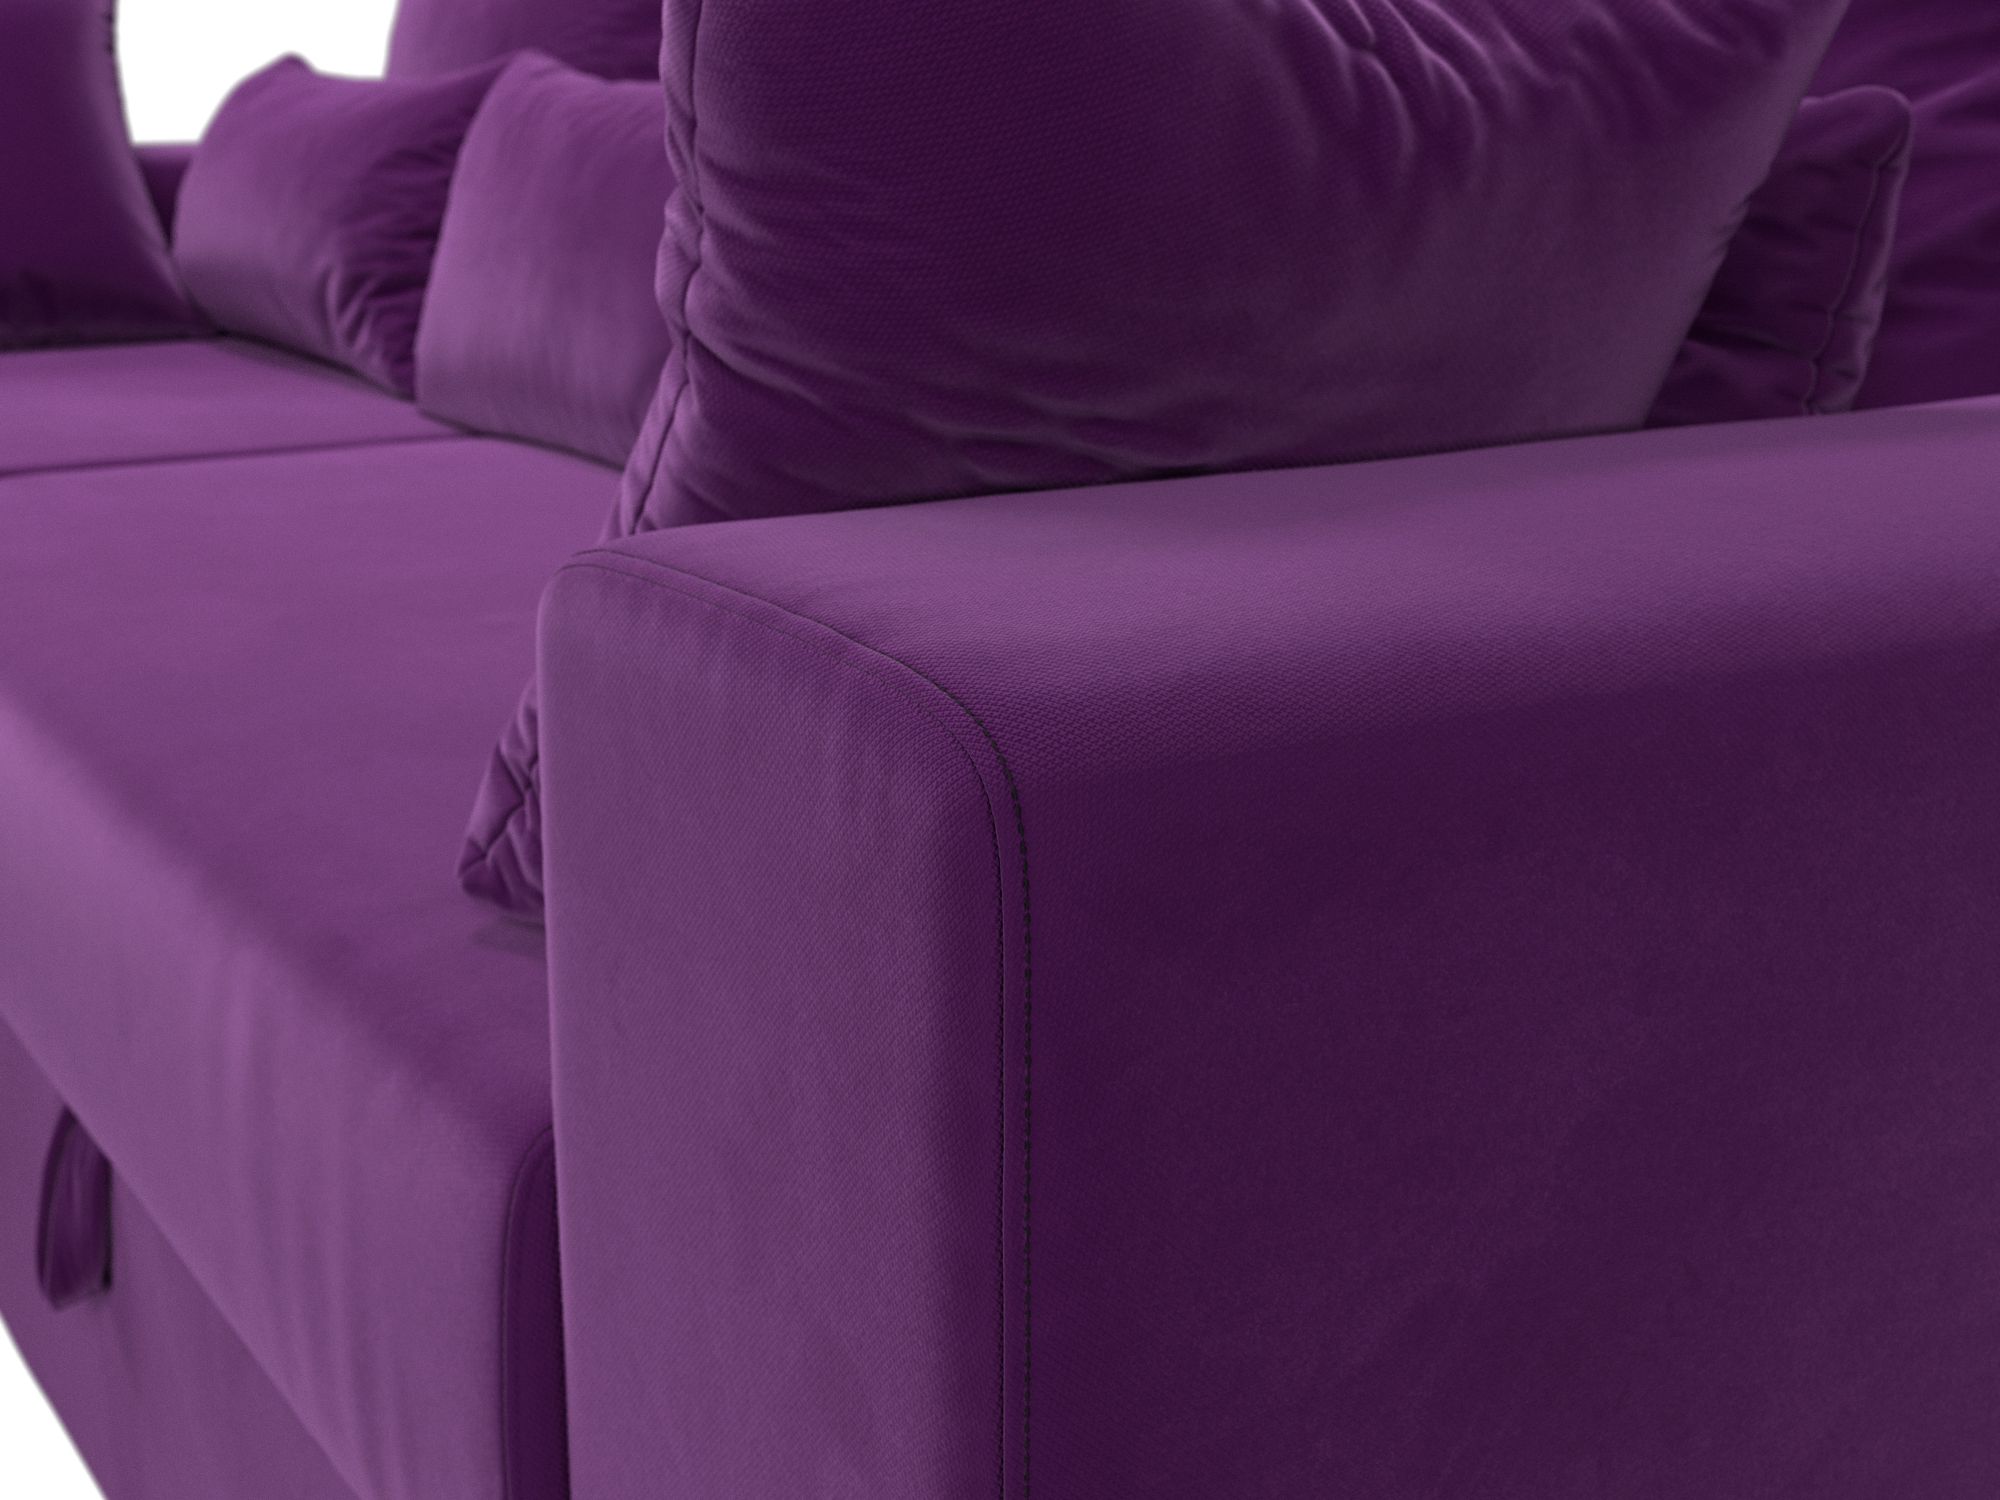 Угловой диван Майами левый угол (Фиолетовый)